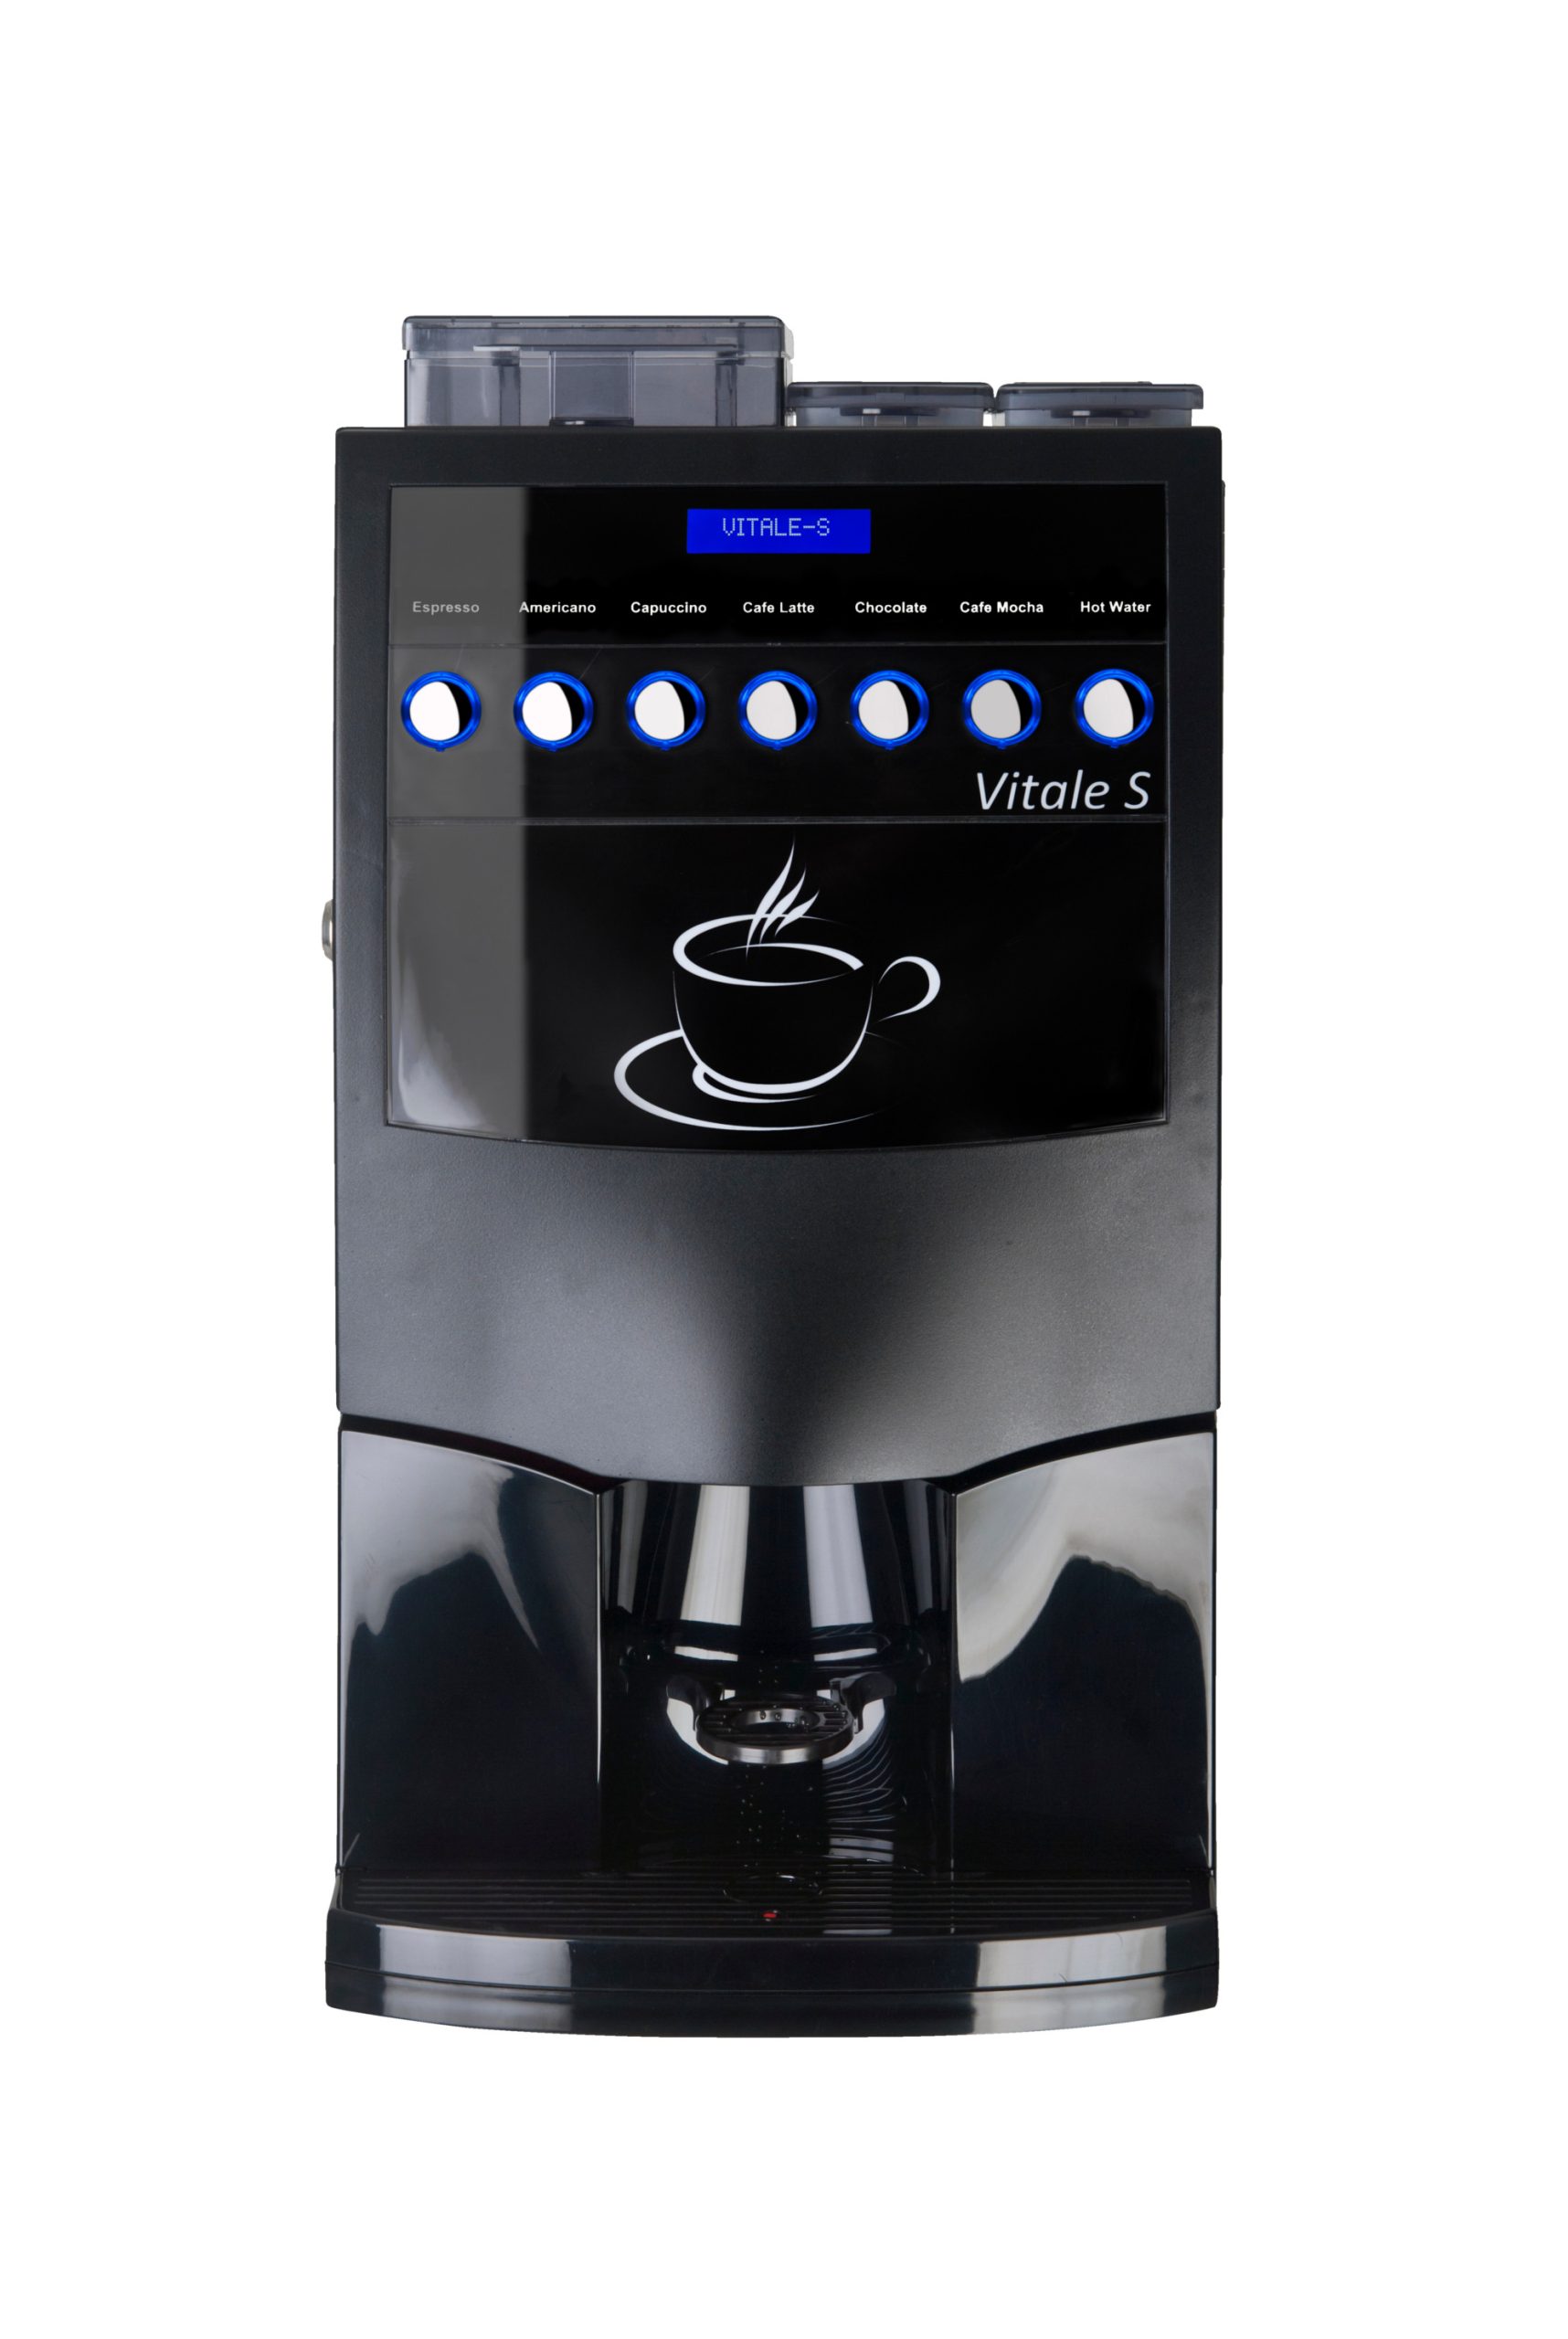 Vitale S coffee machine